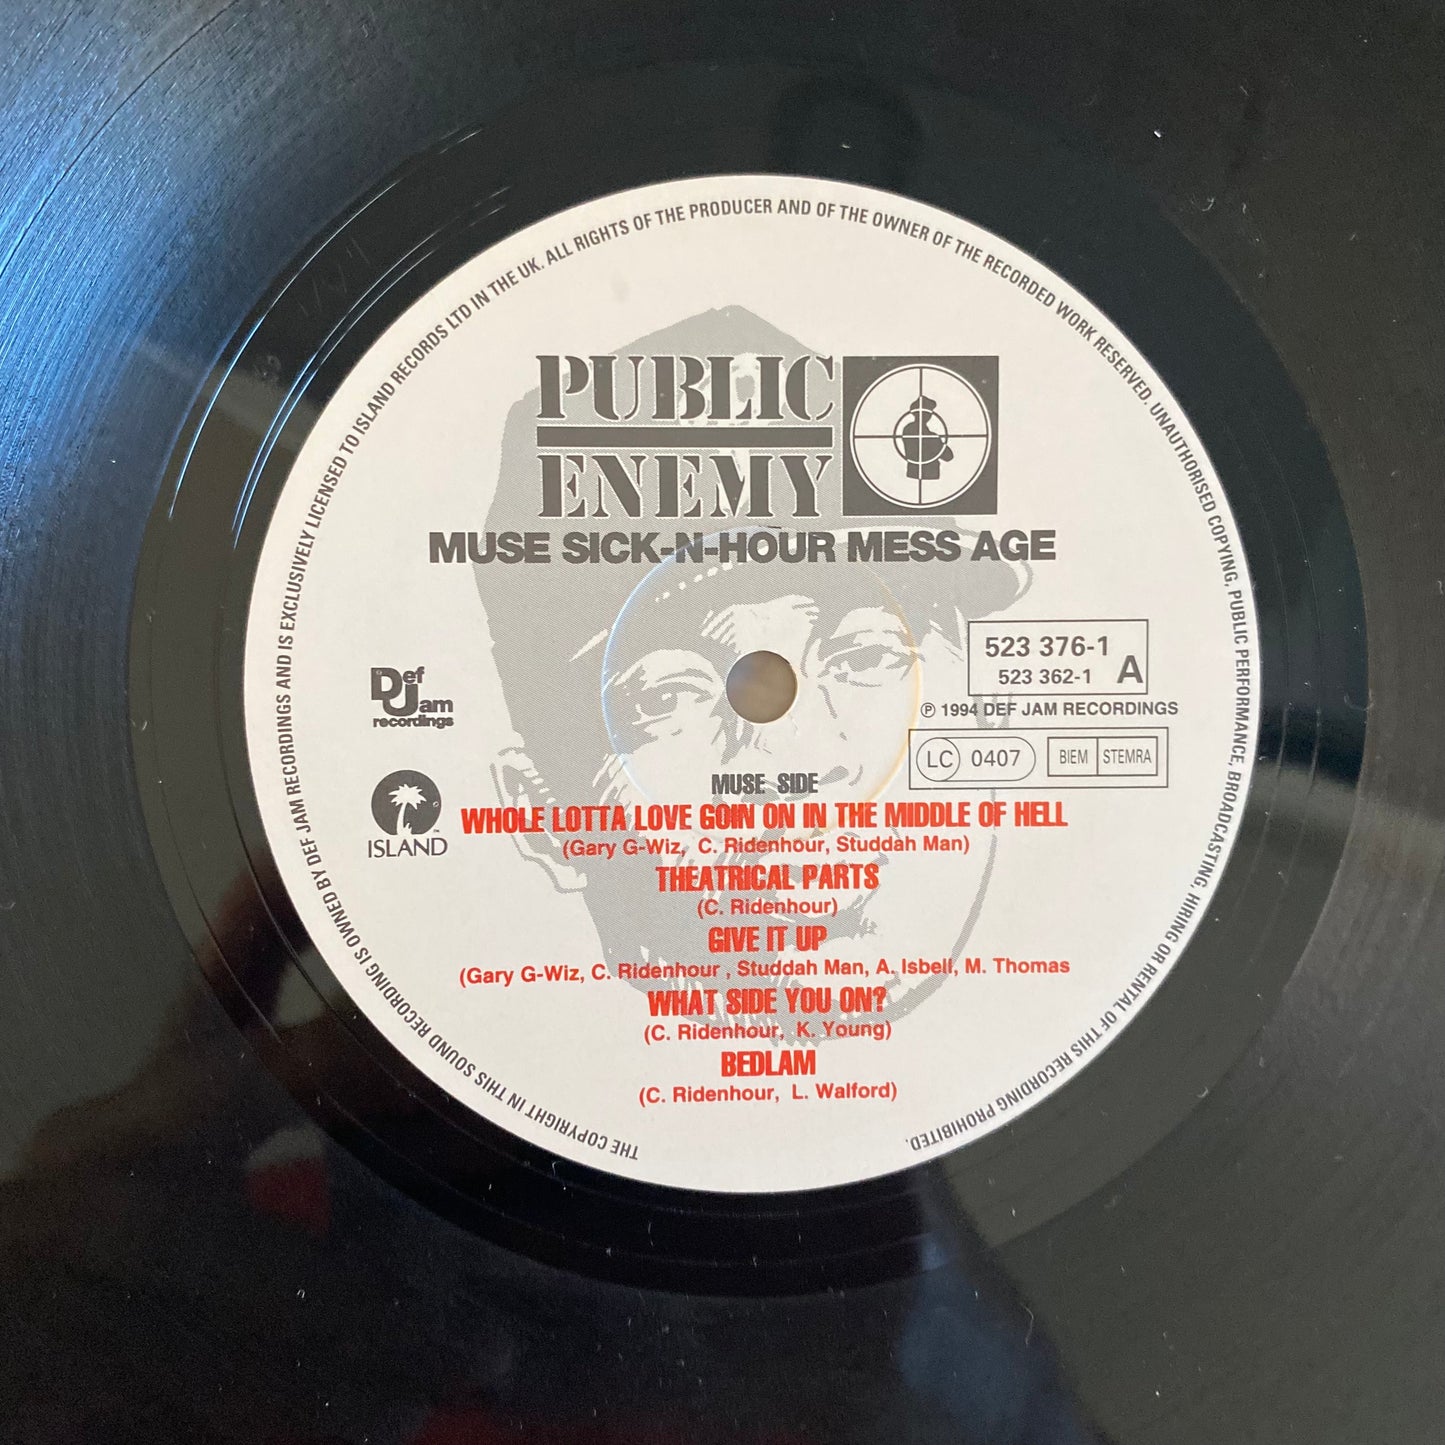 Public Enemy - Muse Sick-N-Hour Mess Age (2xLP, Album). HIP-HOP